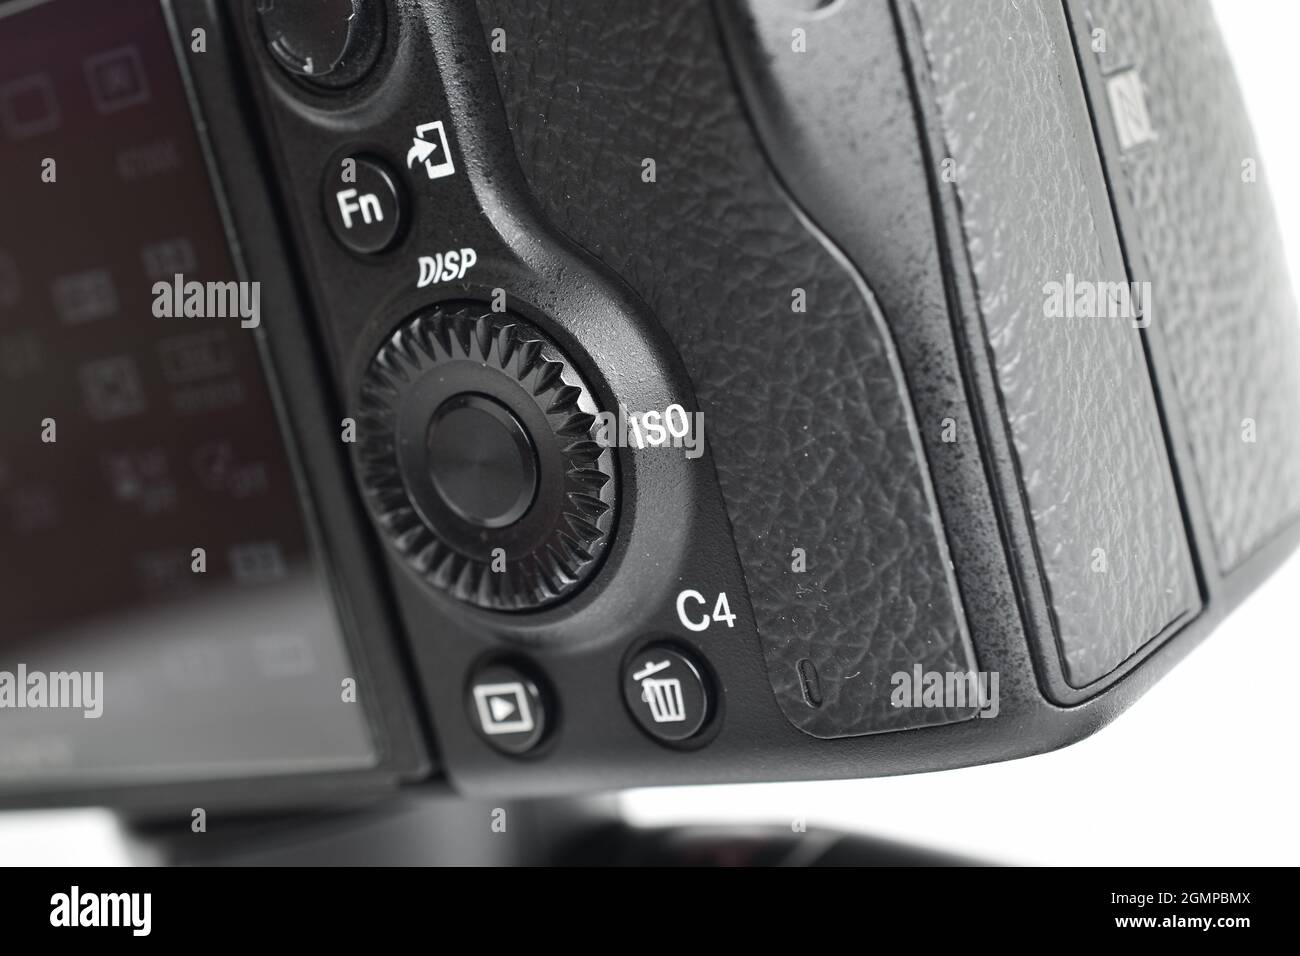 Primo piano dei tasti fotocamera, Fn e Personalizzazione della fotocamera Foto Stock